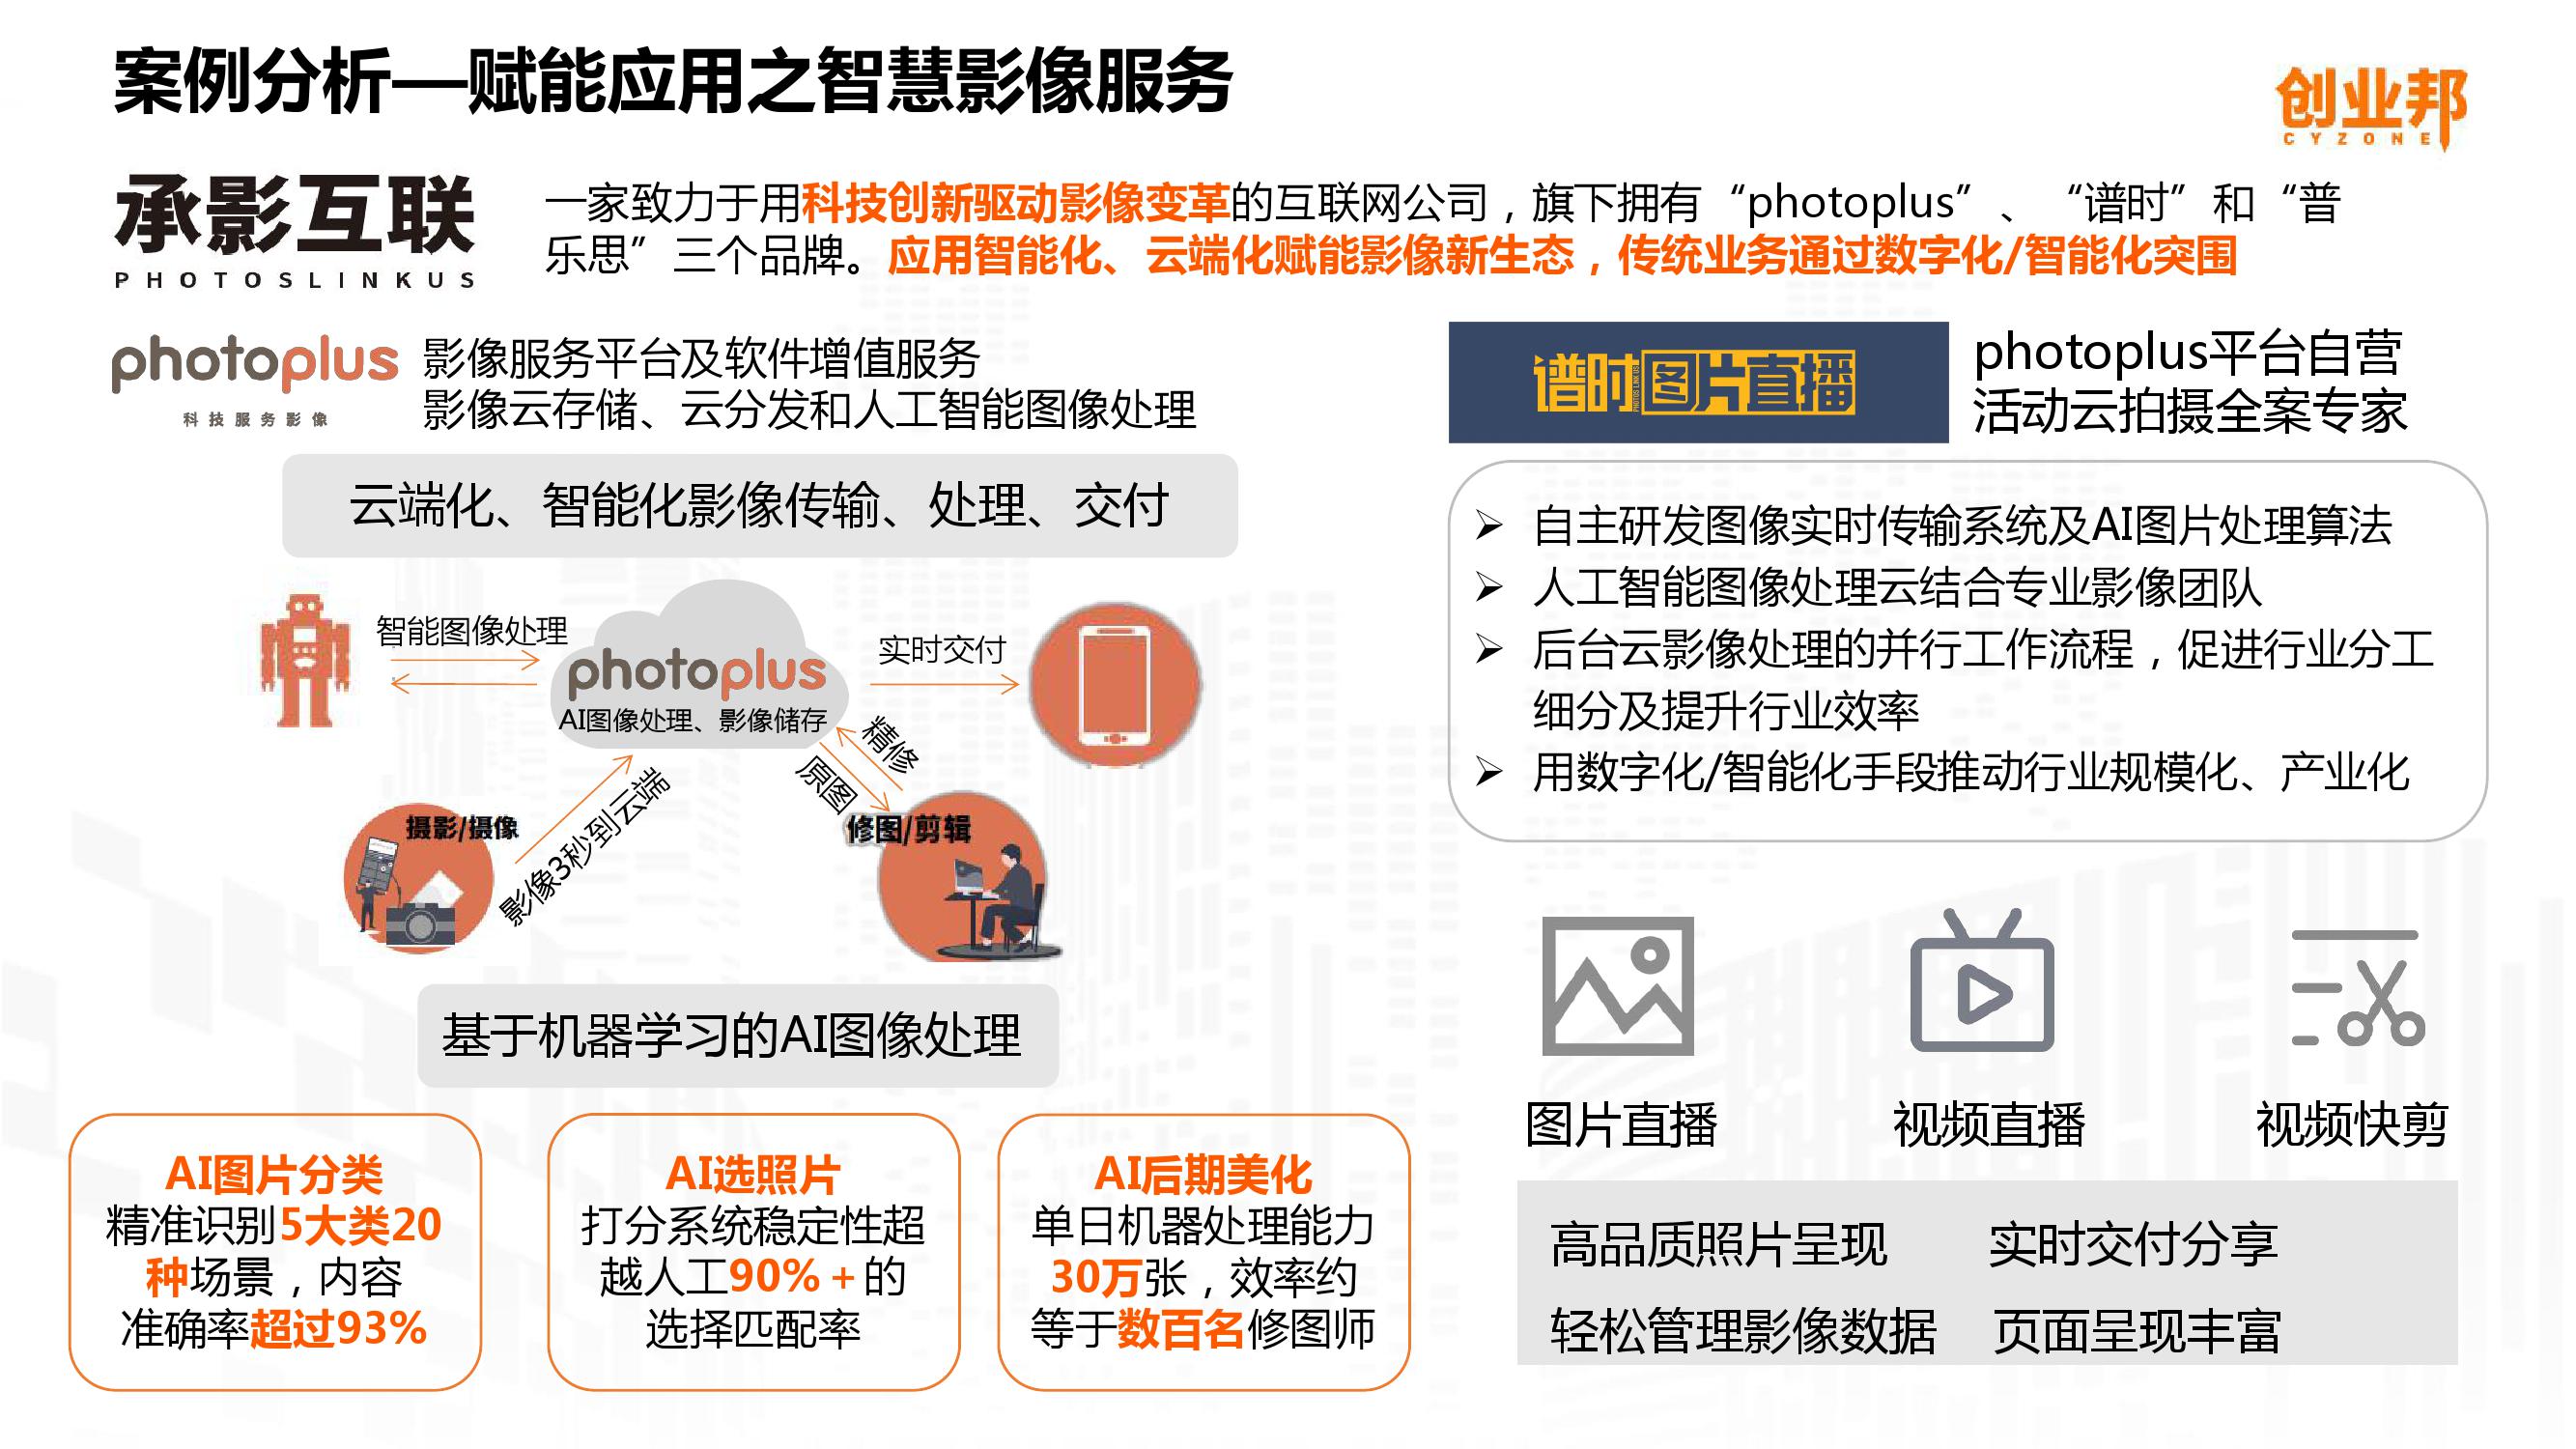 2019中国企业数字化智能化研究报告_000039-3